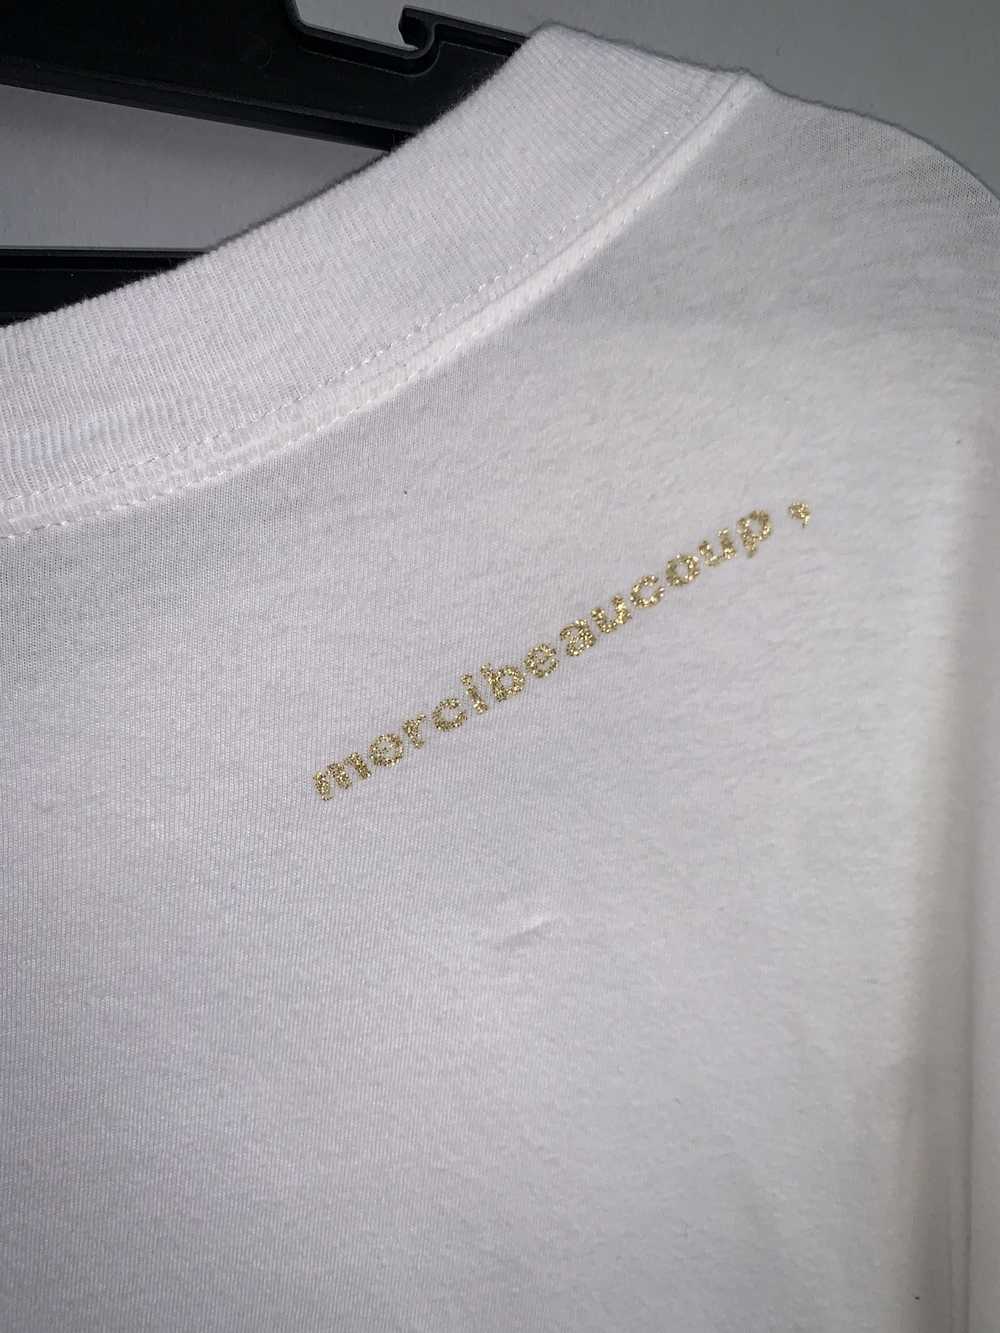 Issey Miyake × Mercibeaucoup Mercibeaucoup Shirt - image 4